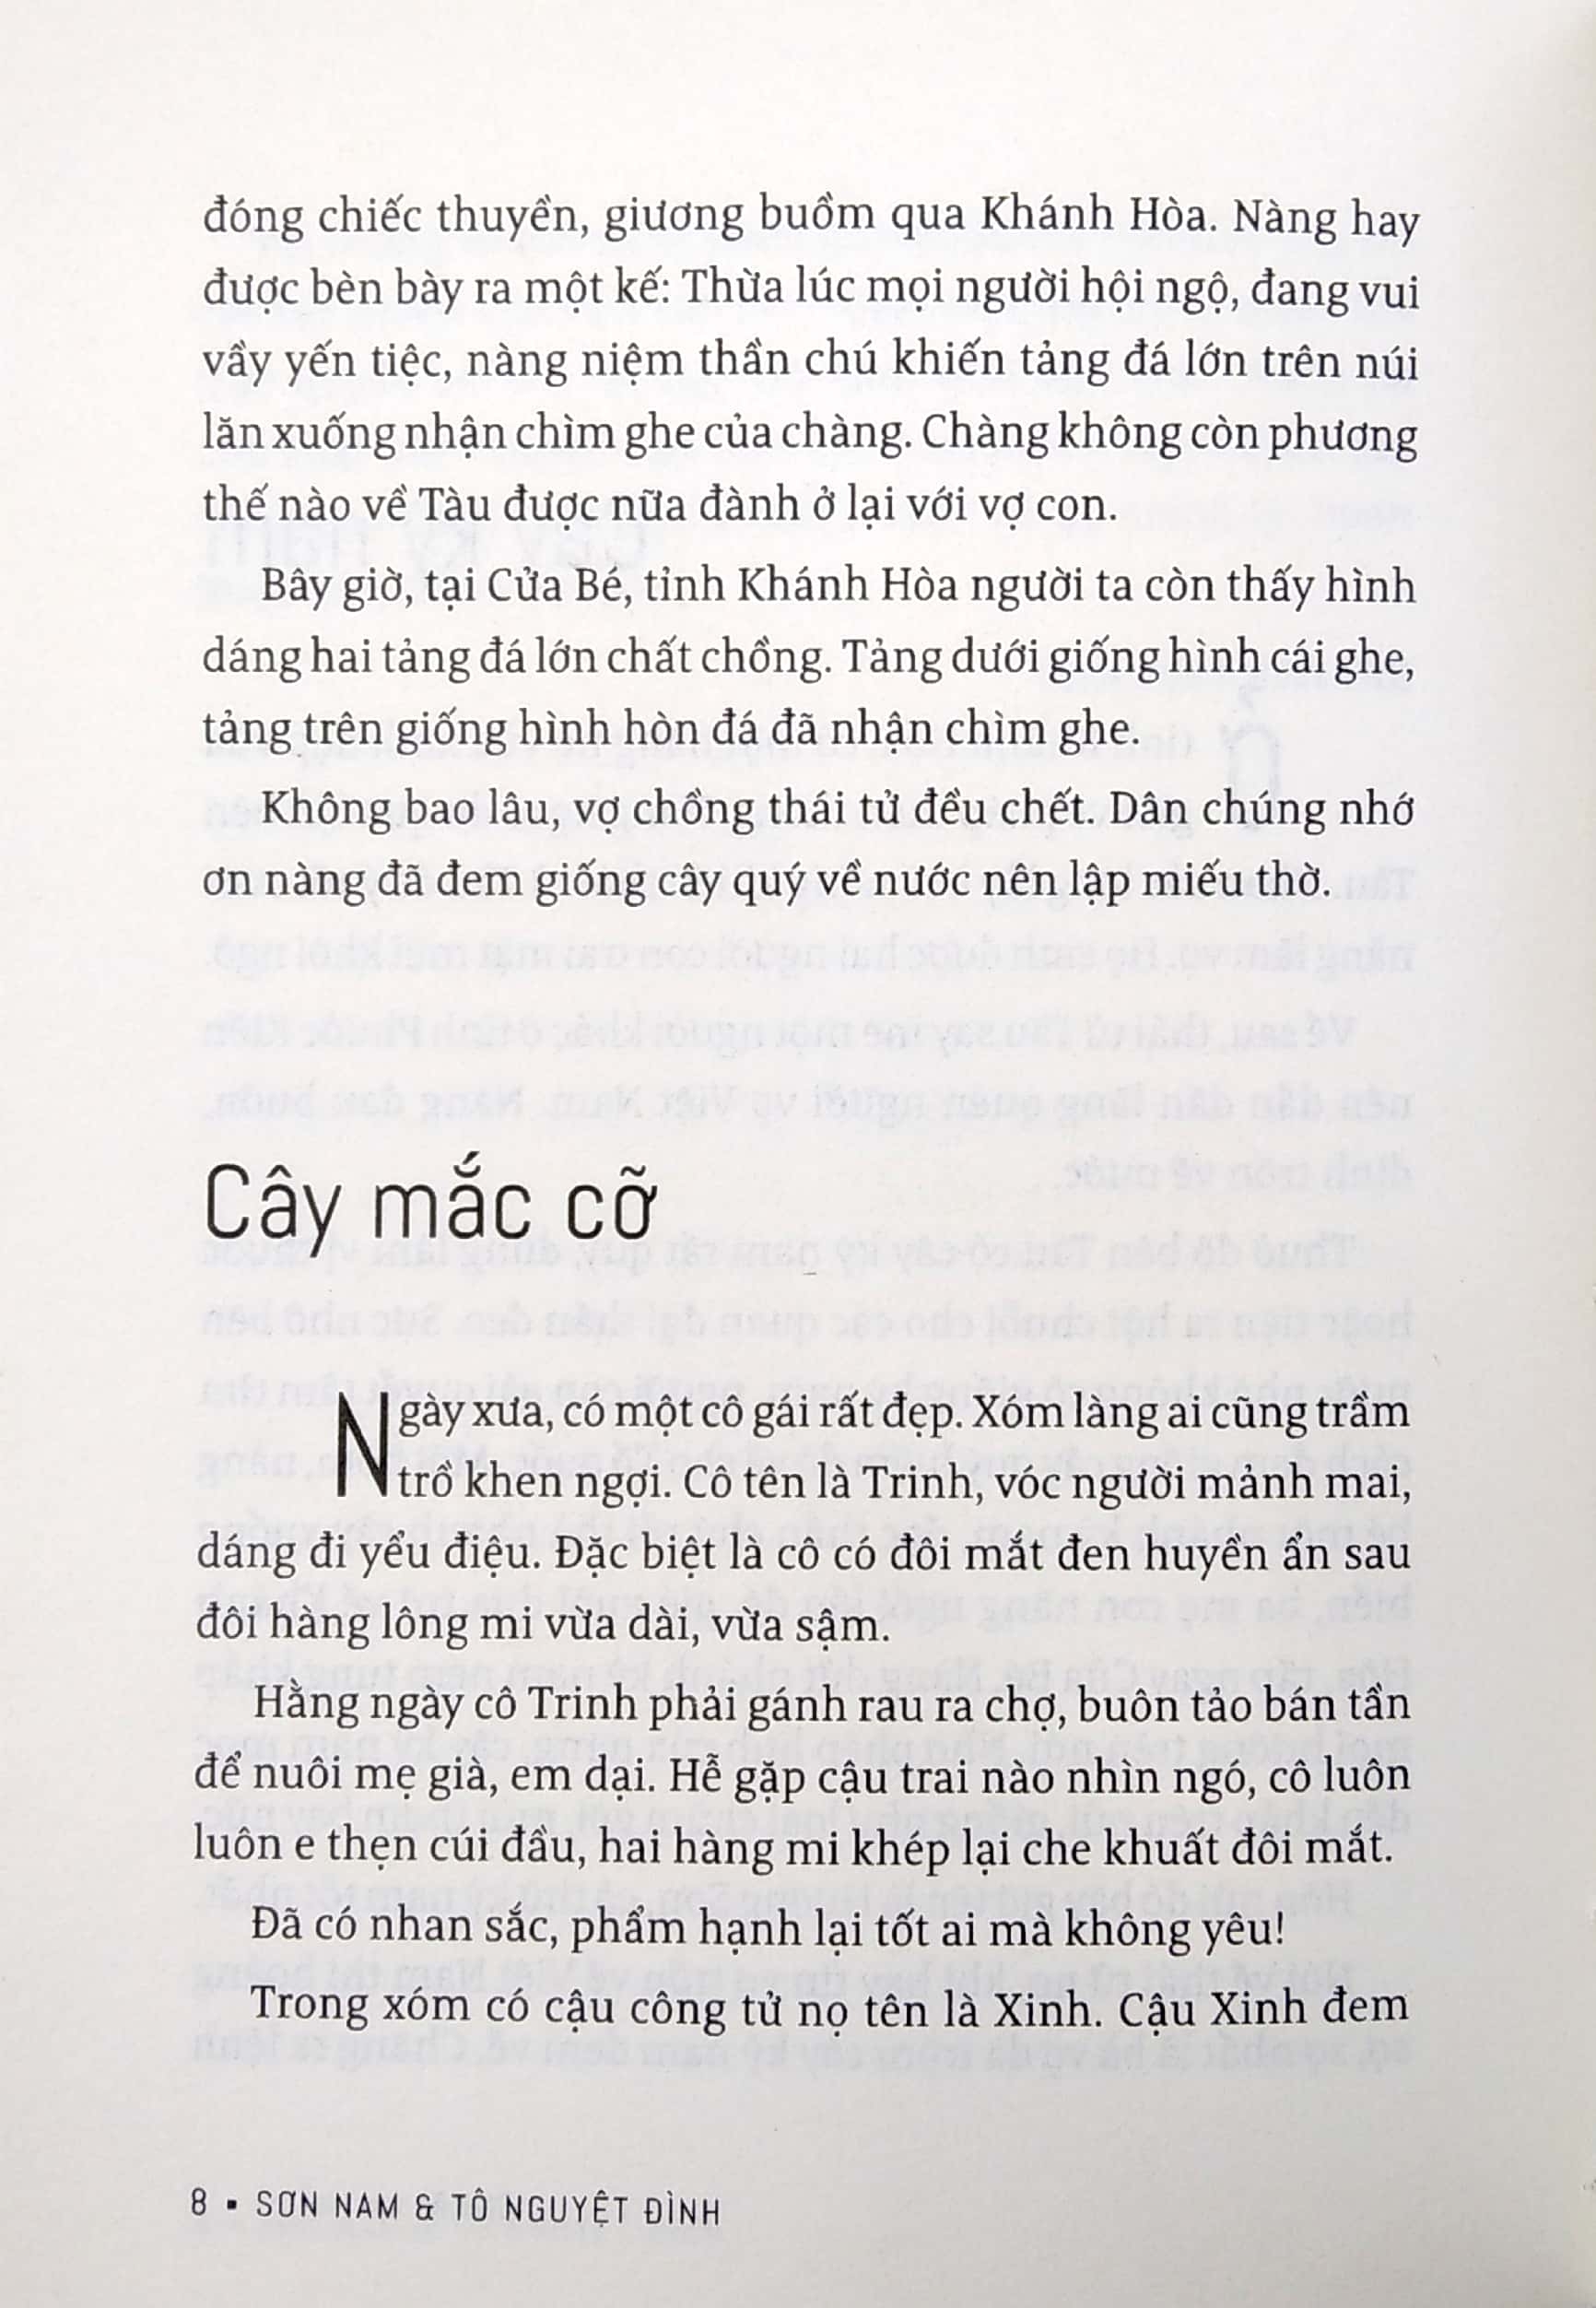 Sơn Nam Và Tô Nguyệt Đình - Chuyện Xưa Tích Cũ 2018 PDF